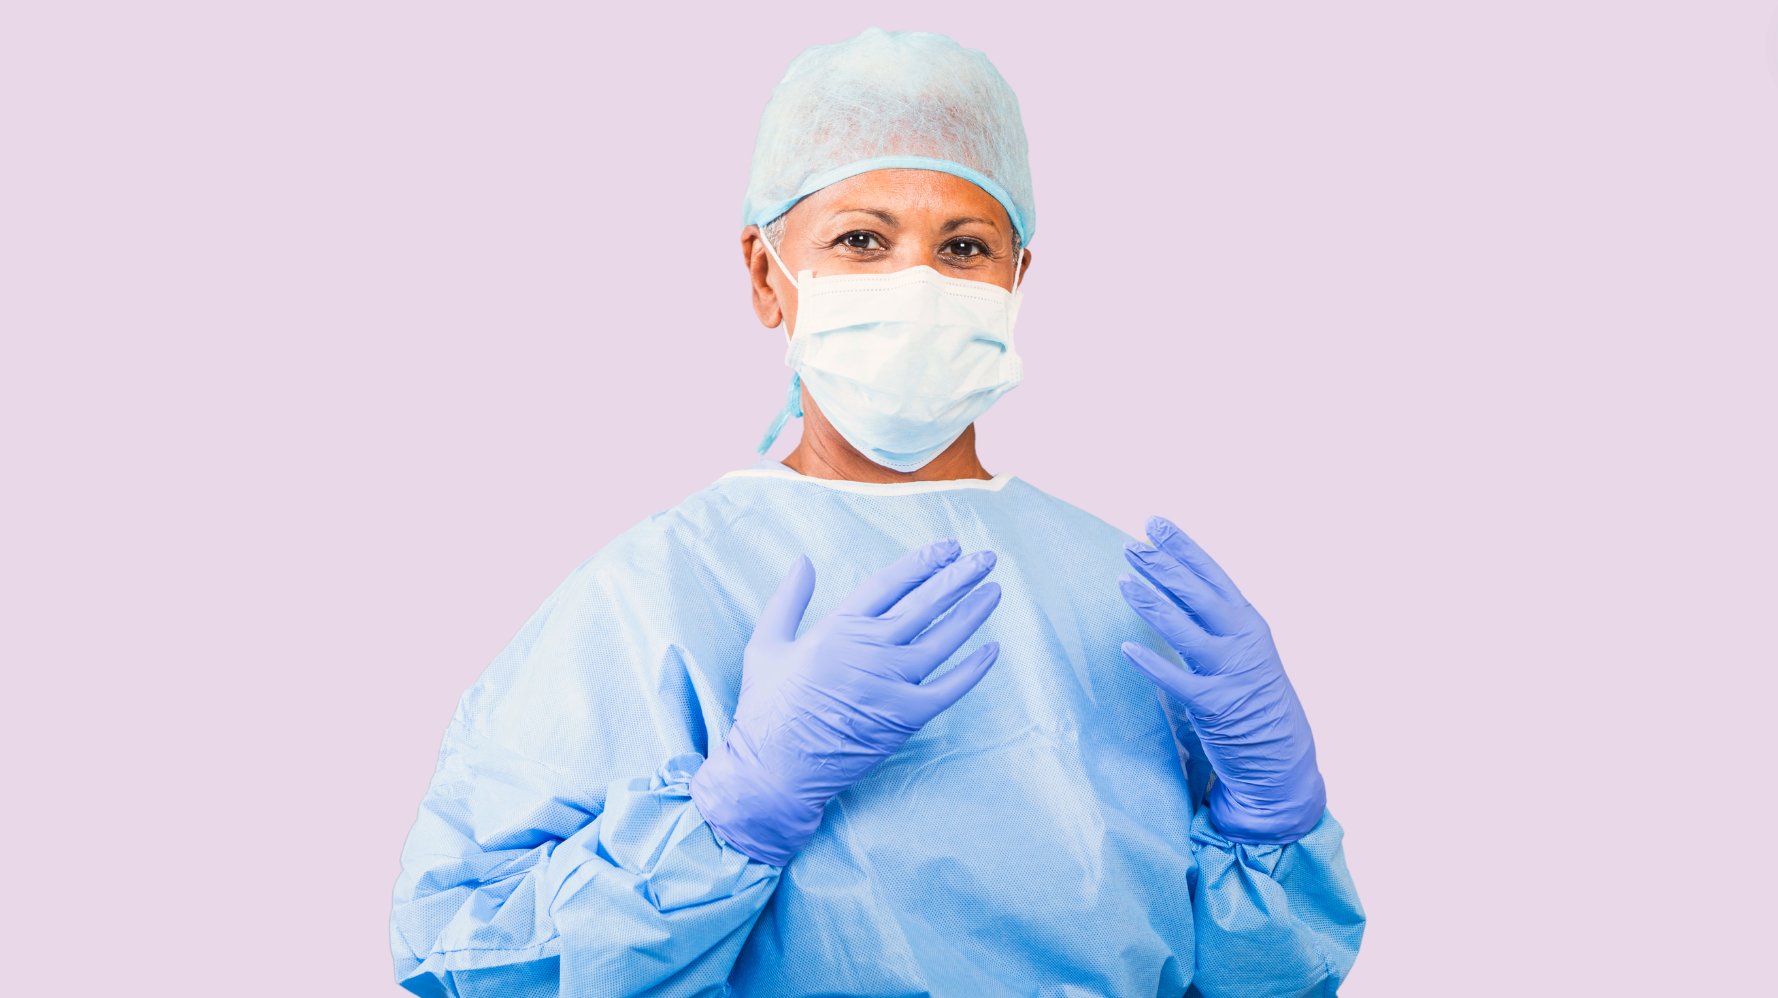 Plastikkirurger opererar